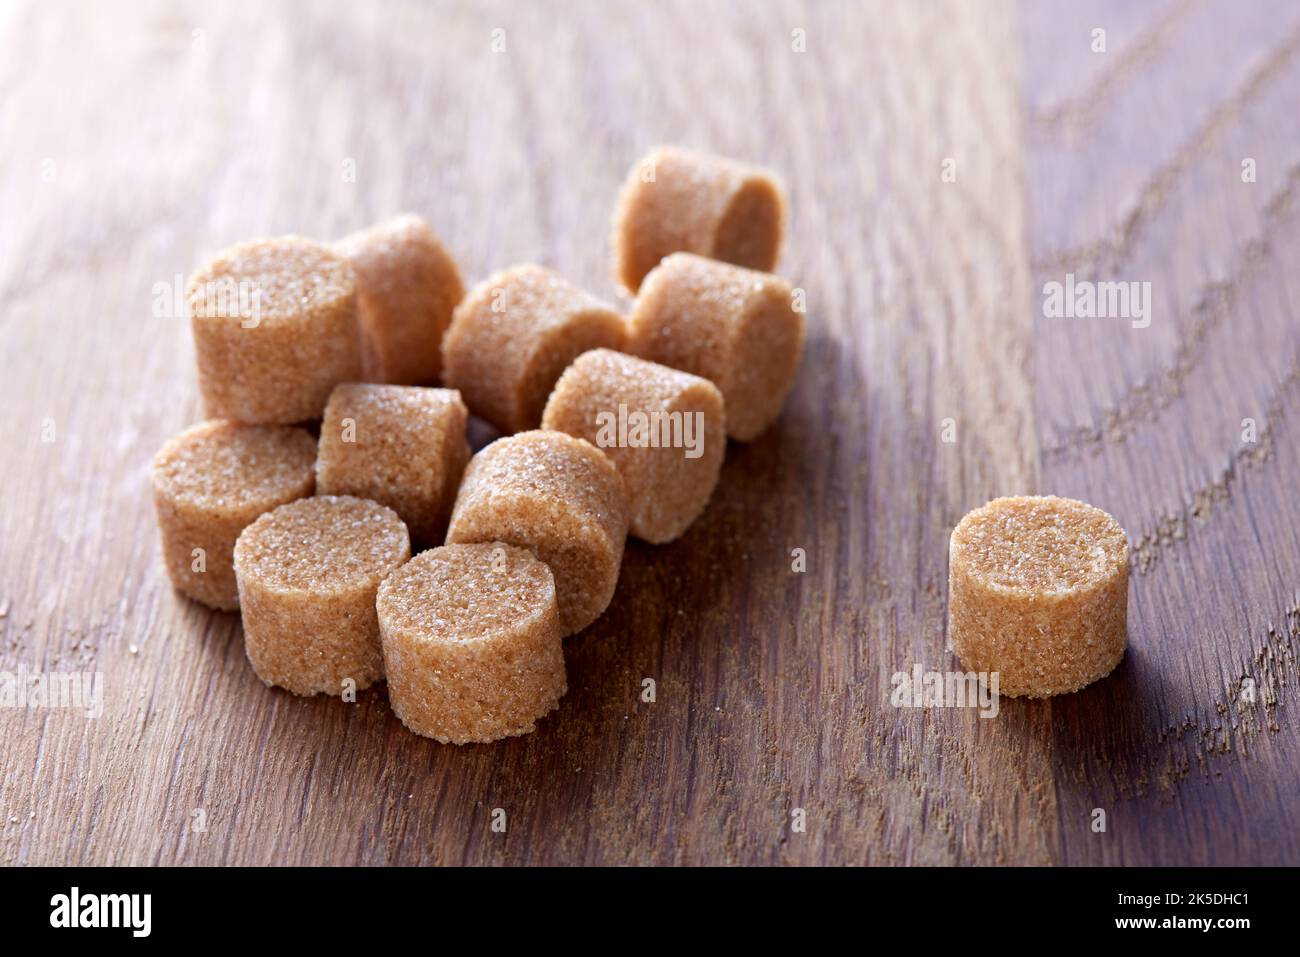 El azúcar marrón redondo se forma sobre una vieja tabla de madera oscura - vista de cerca Foto de stock